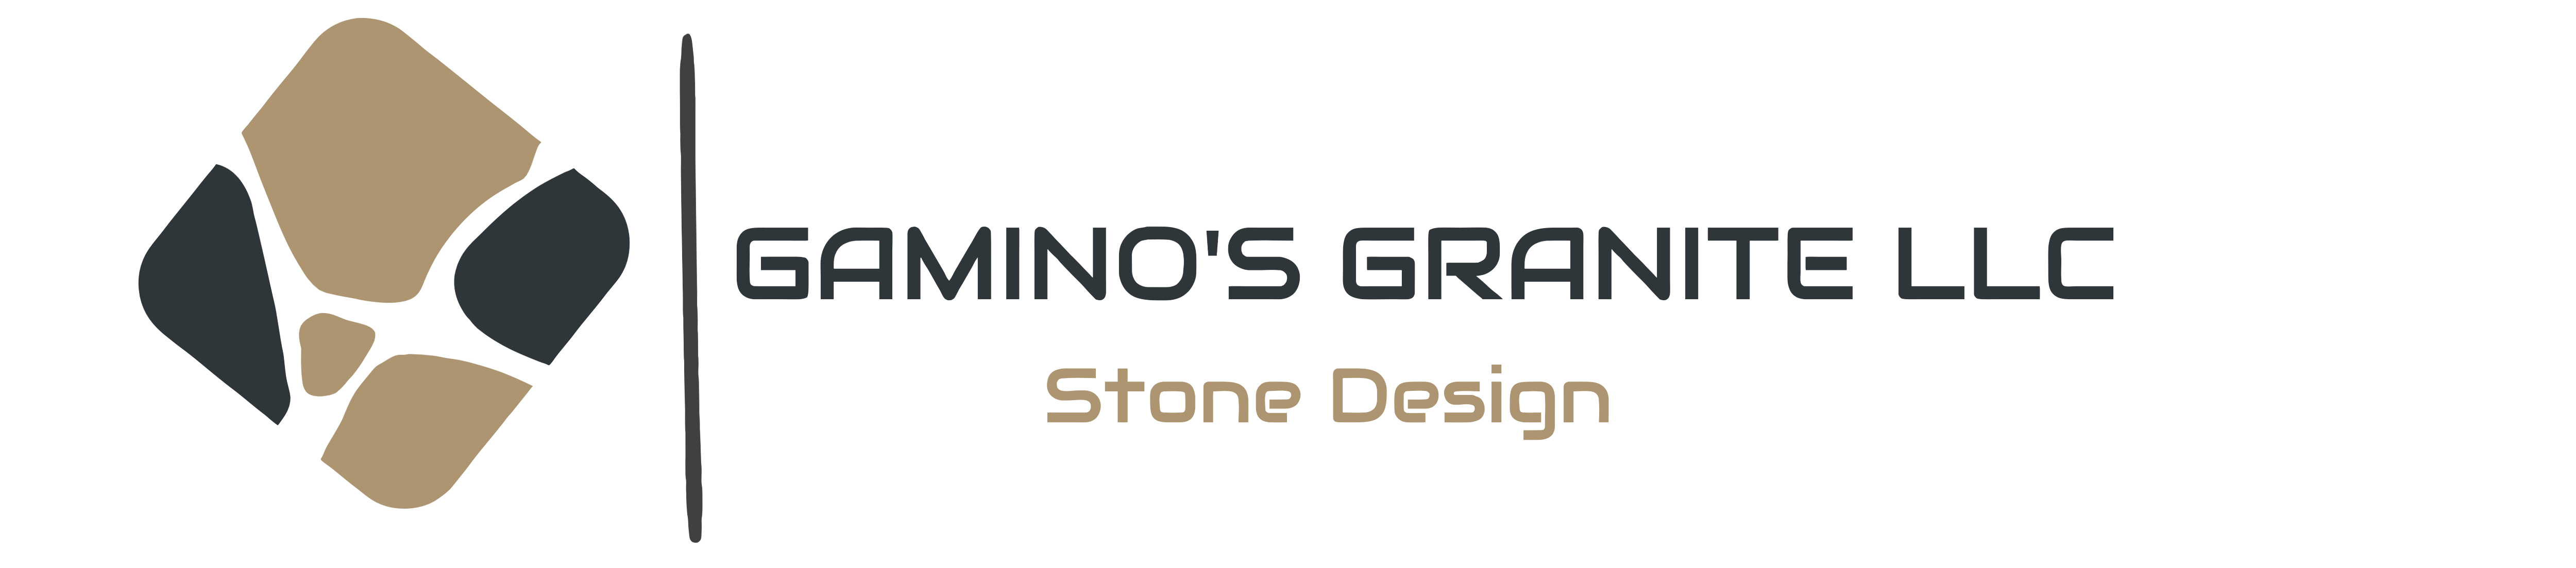 Gamino's Granite